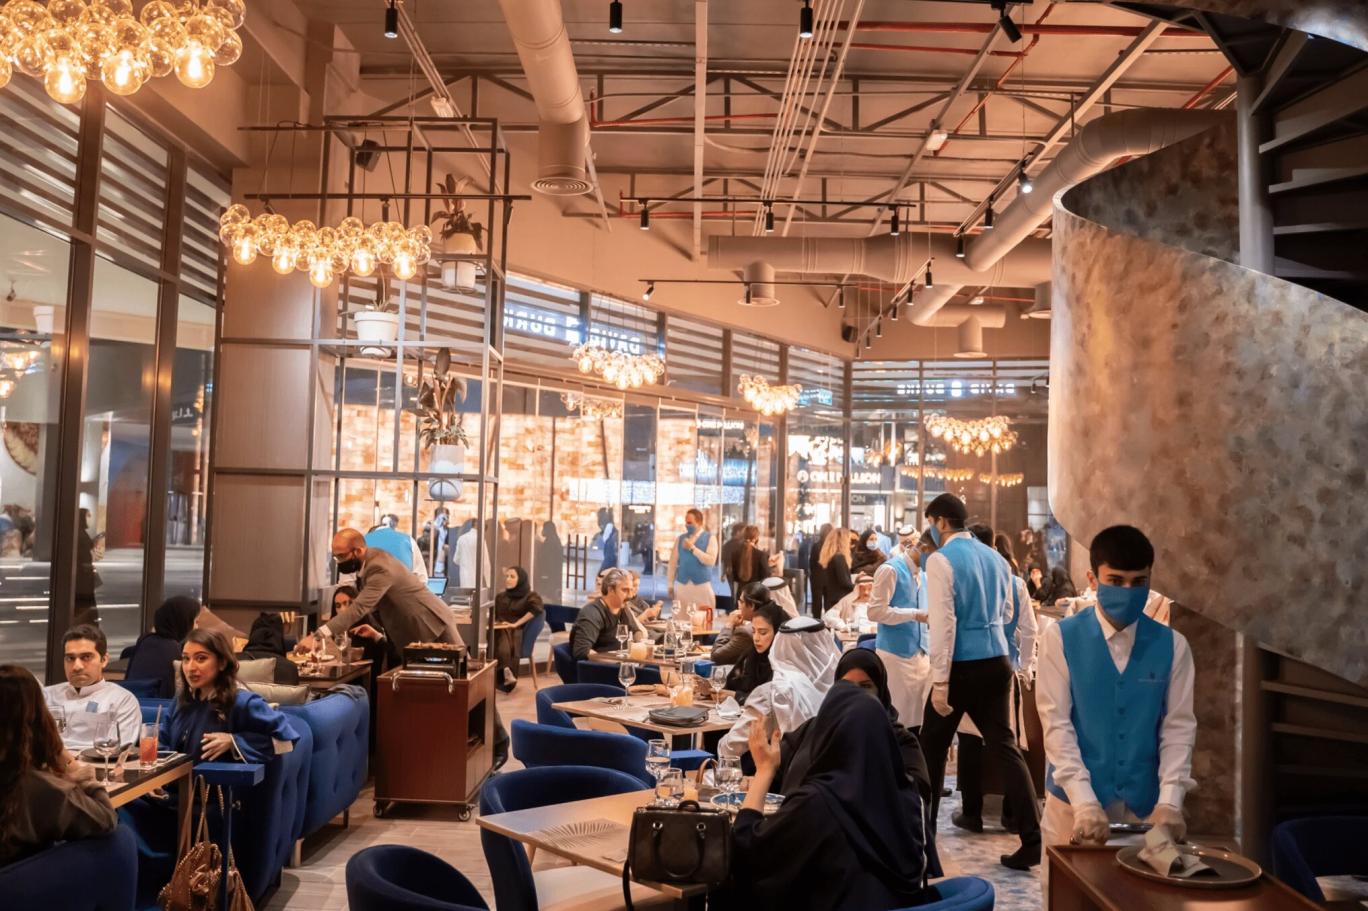 أسباب تراجع متوسط قيمة العملية الواحدة لمطاعم ومقاهي السعودية إلى أقل من 35 ريالا